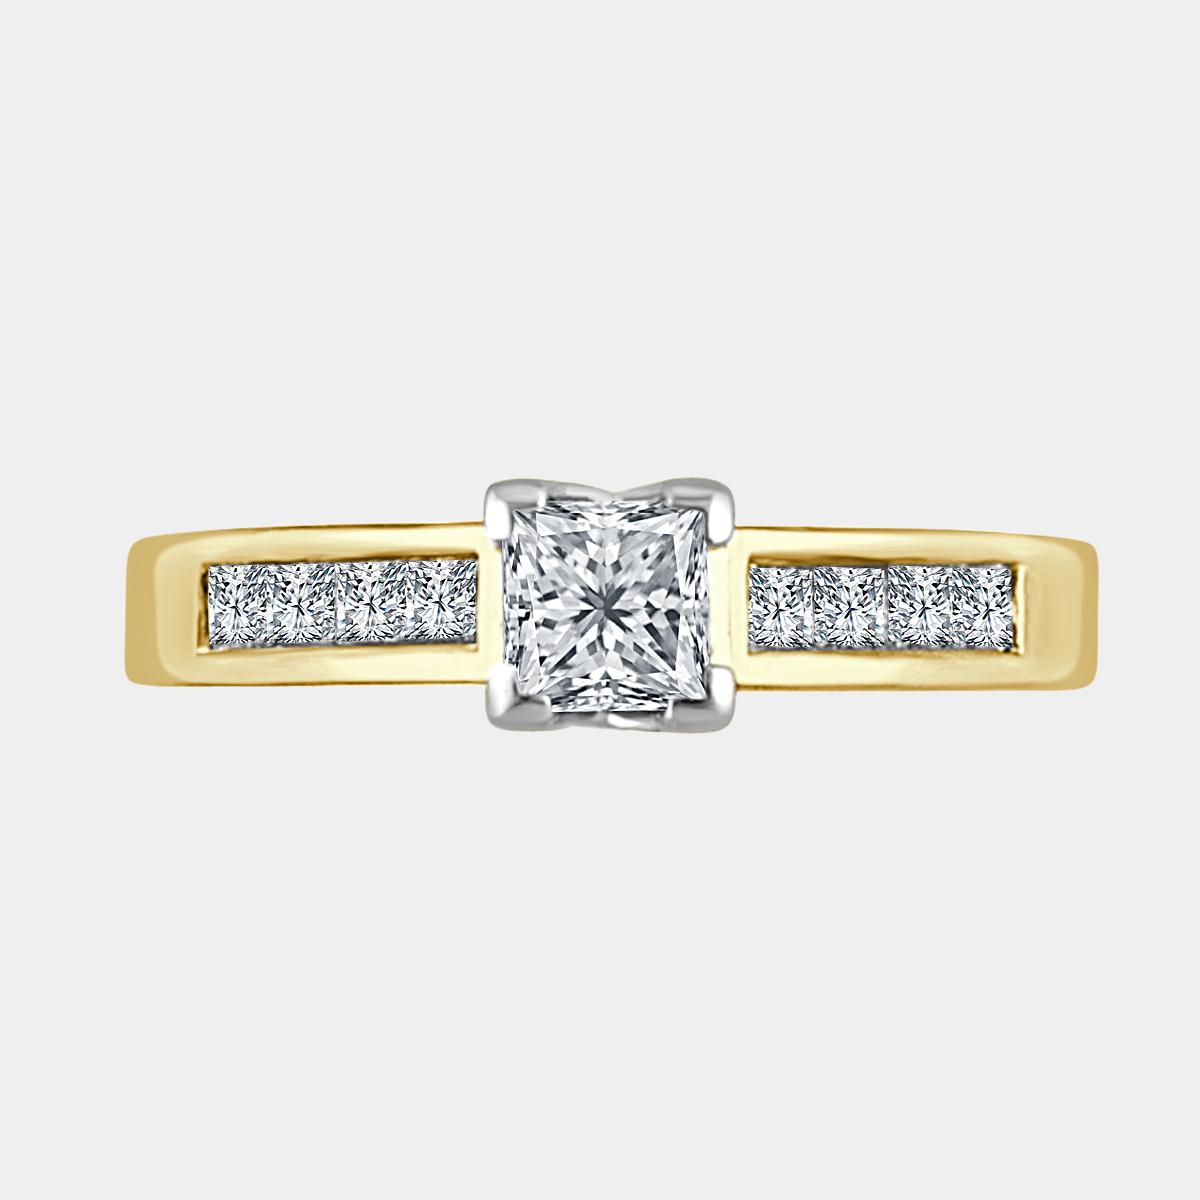 0.45 carat Princess cut diamond with channel set shoulder diamonds.